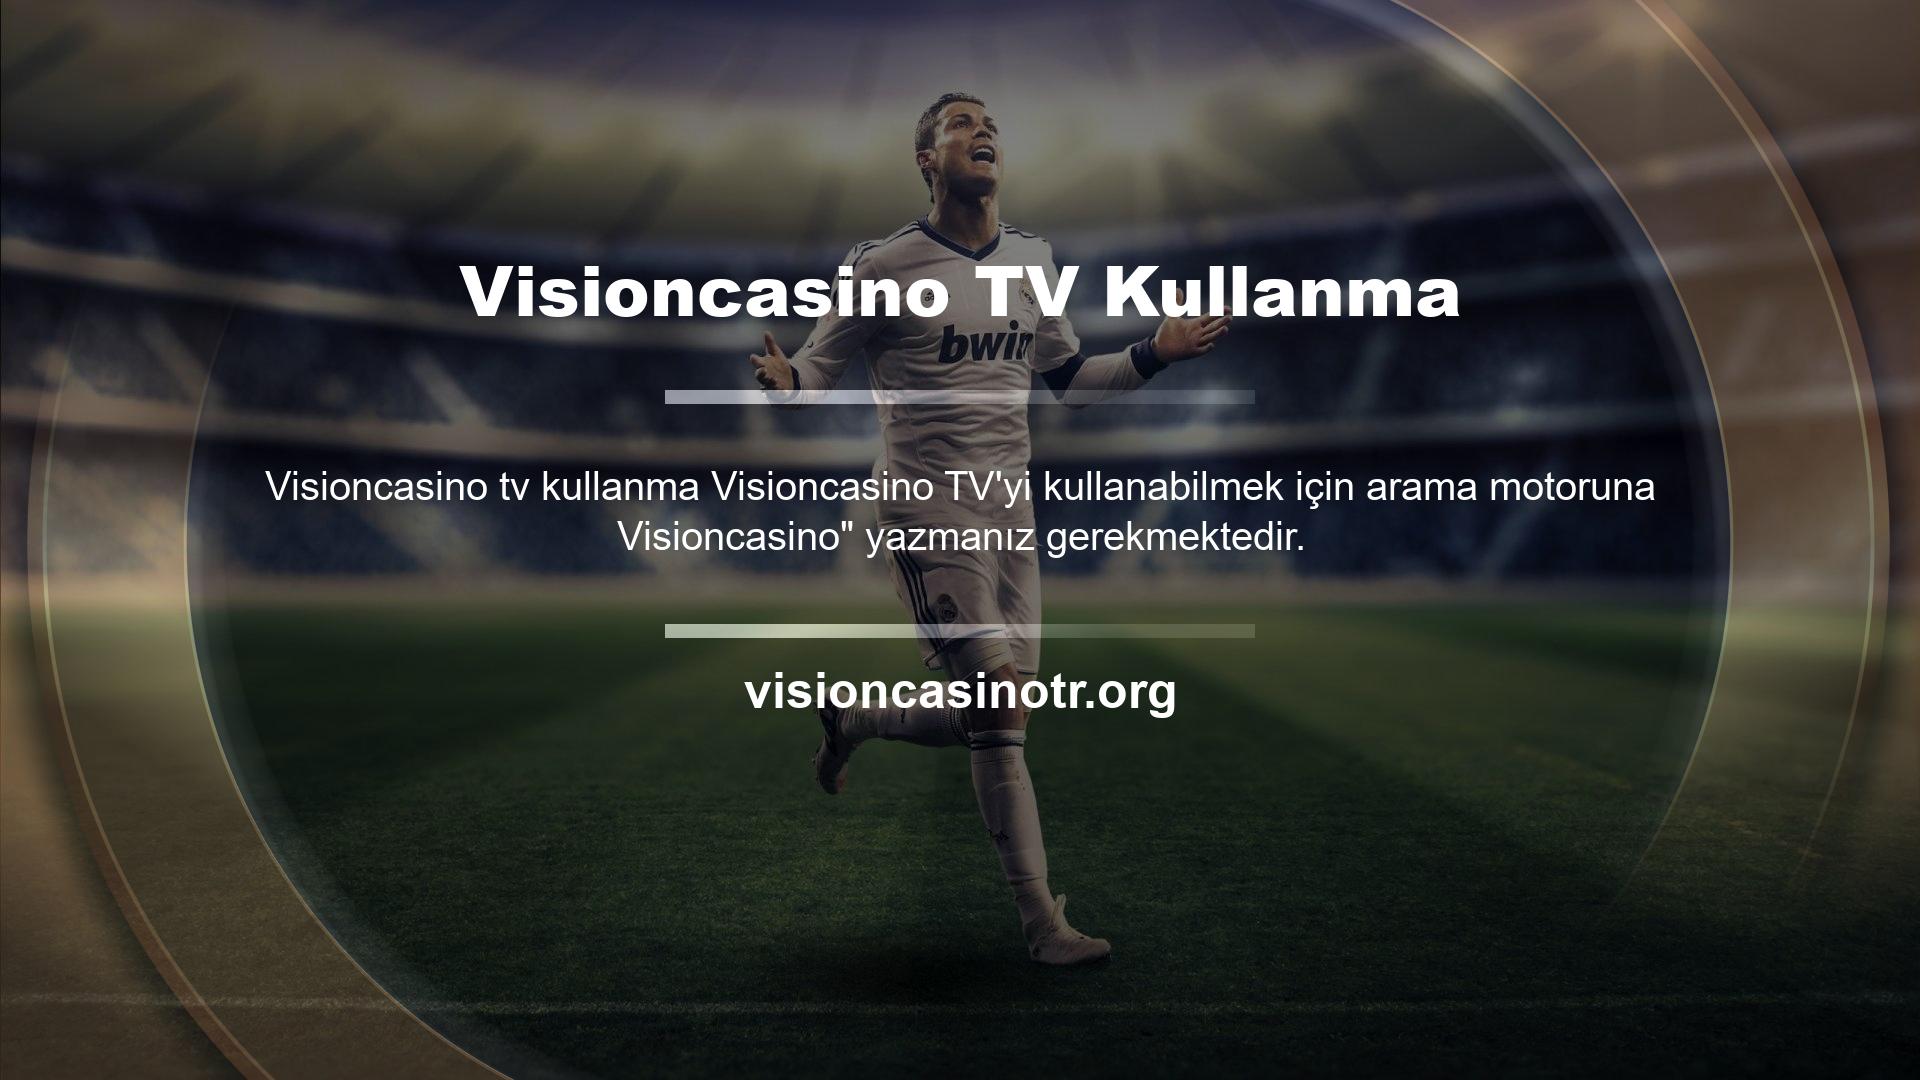 Visioncasino TV reklamlardan rahatsız olmadan maç izlemenize olanak sağlar